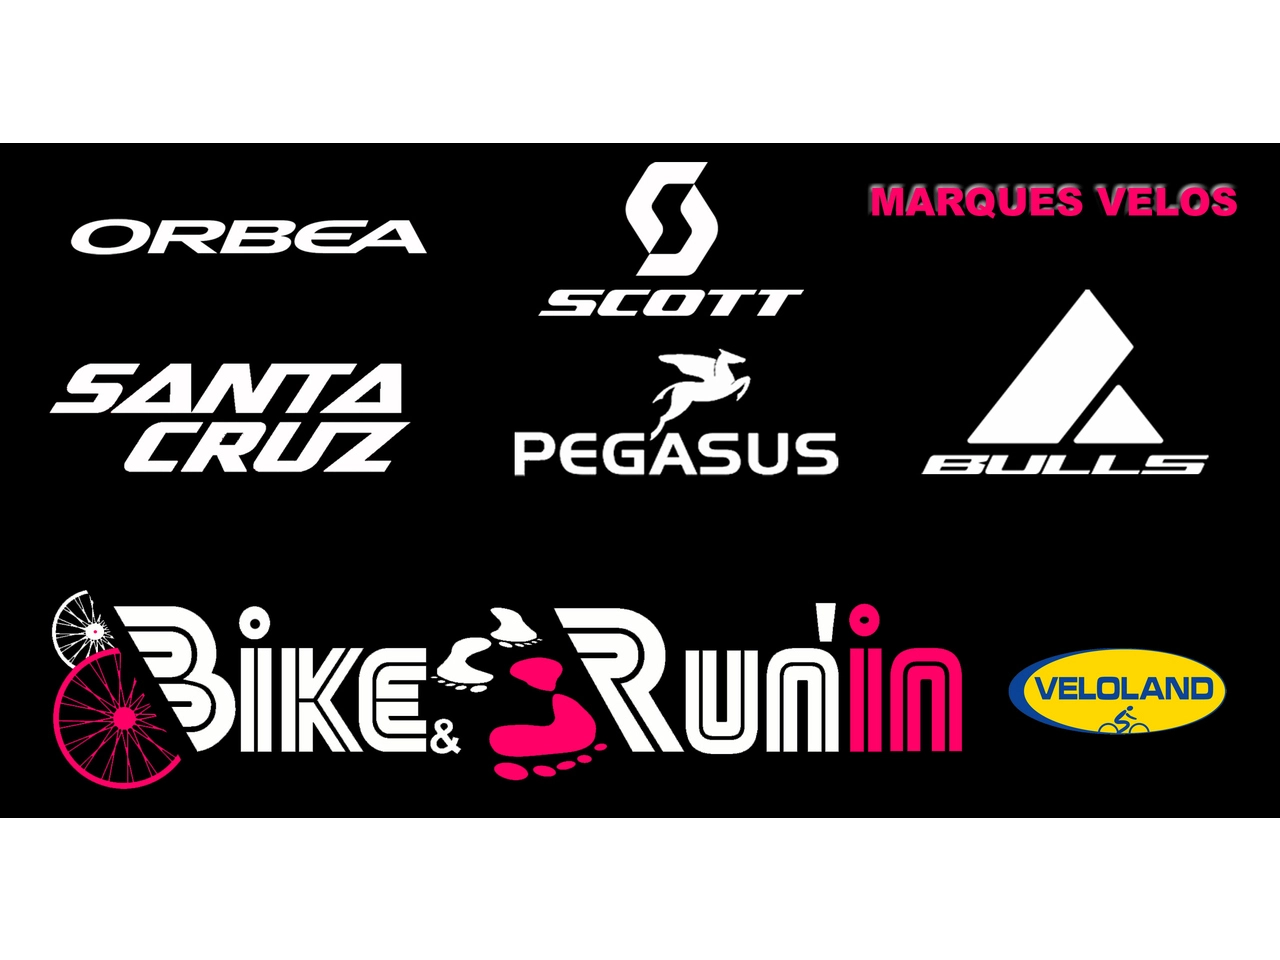 Bike and Run'In magasin de vélo à Colmar Marques vélos : BULLS, SCOTT, PEGASUS, ORBEA, SANTACRUZ